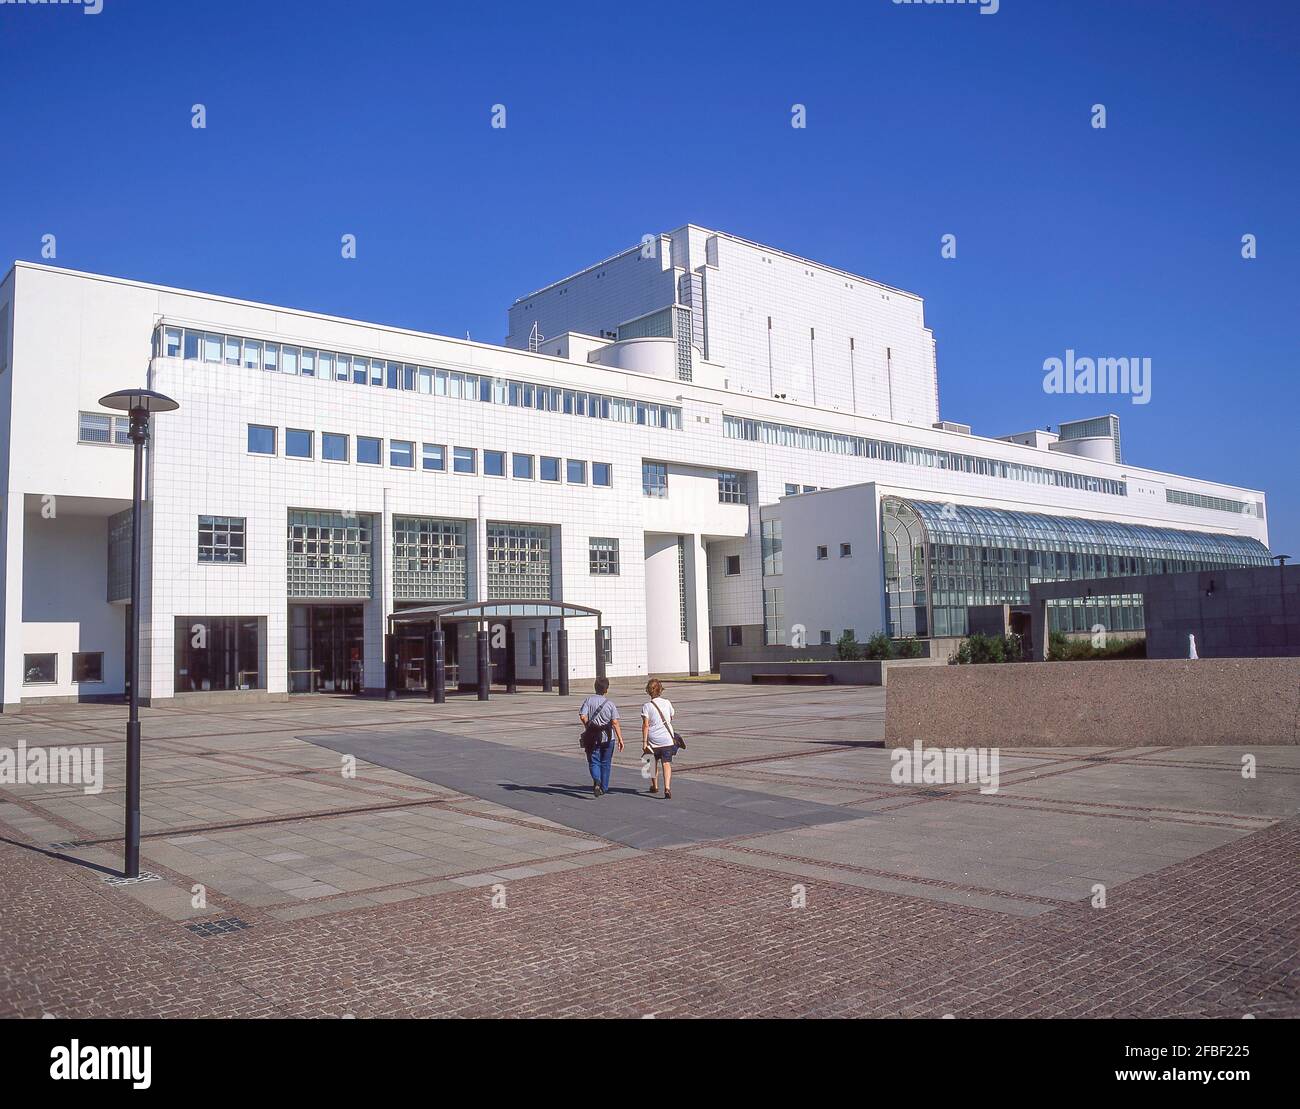 Finnish National Opera House (Suomen Kansallisooppera), Läntinen Teatterikuja, Helsinki, Republic of Finland Stock Photo